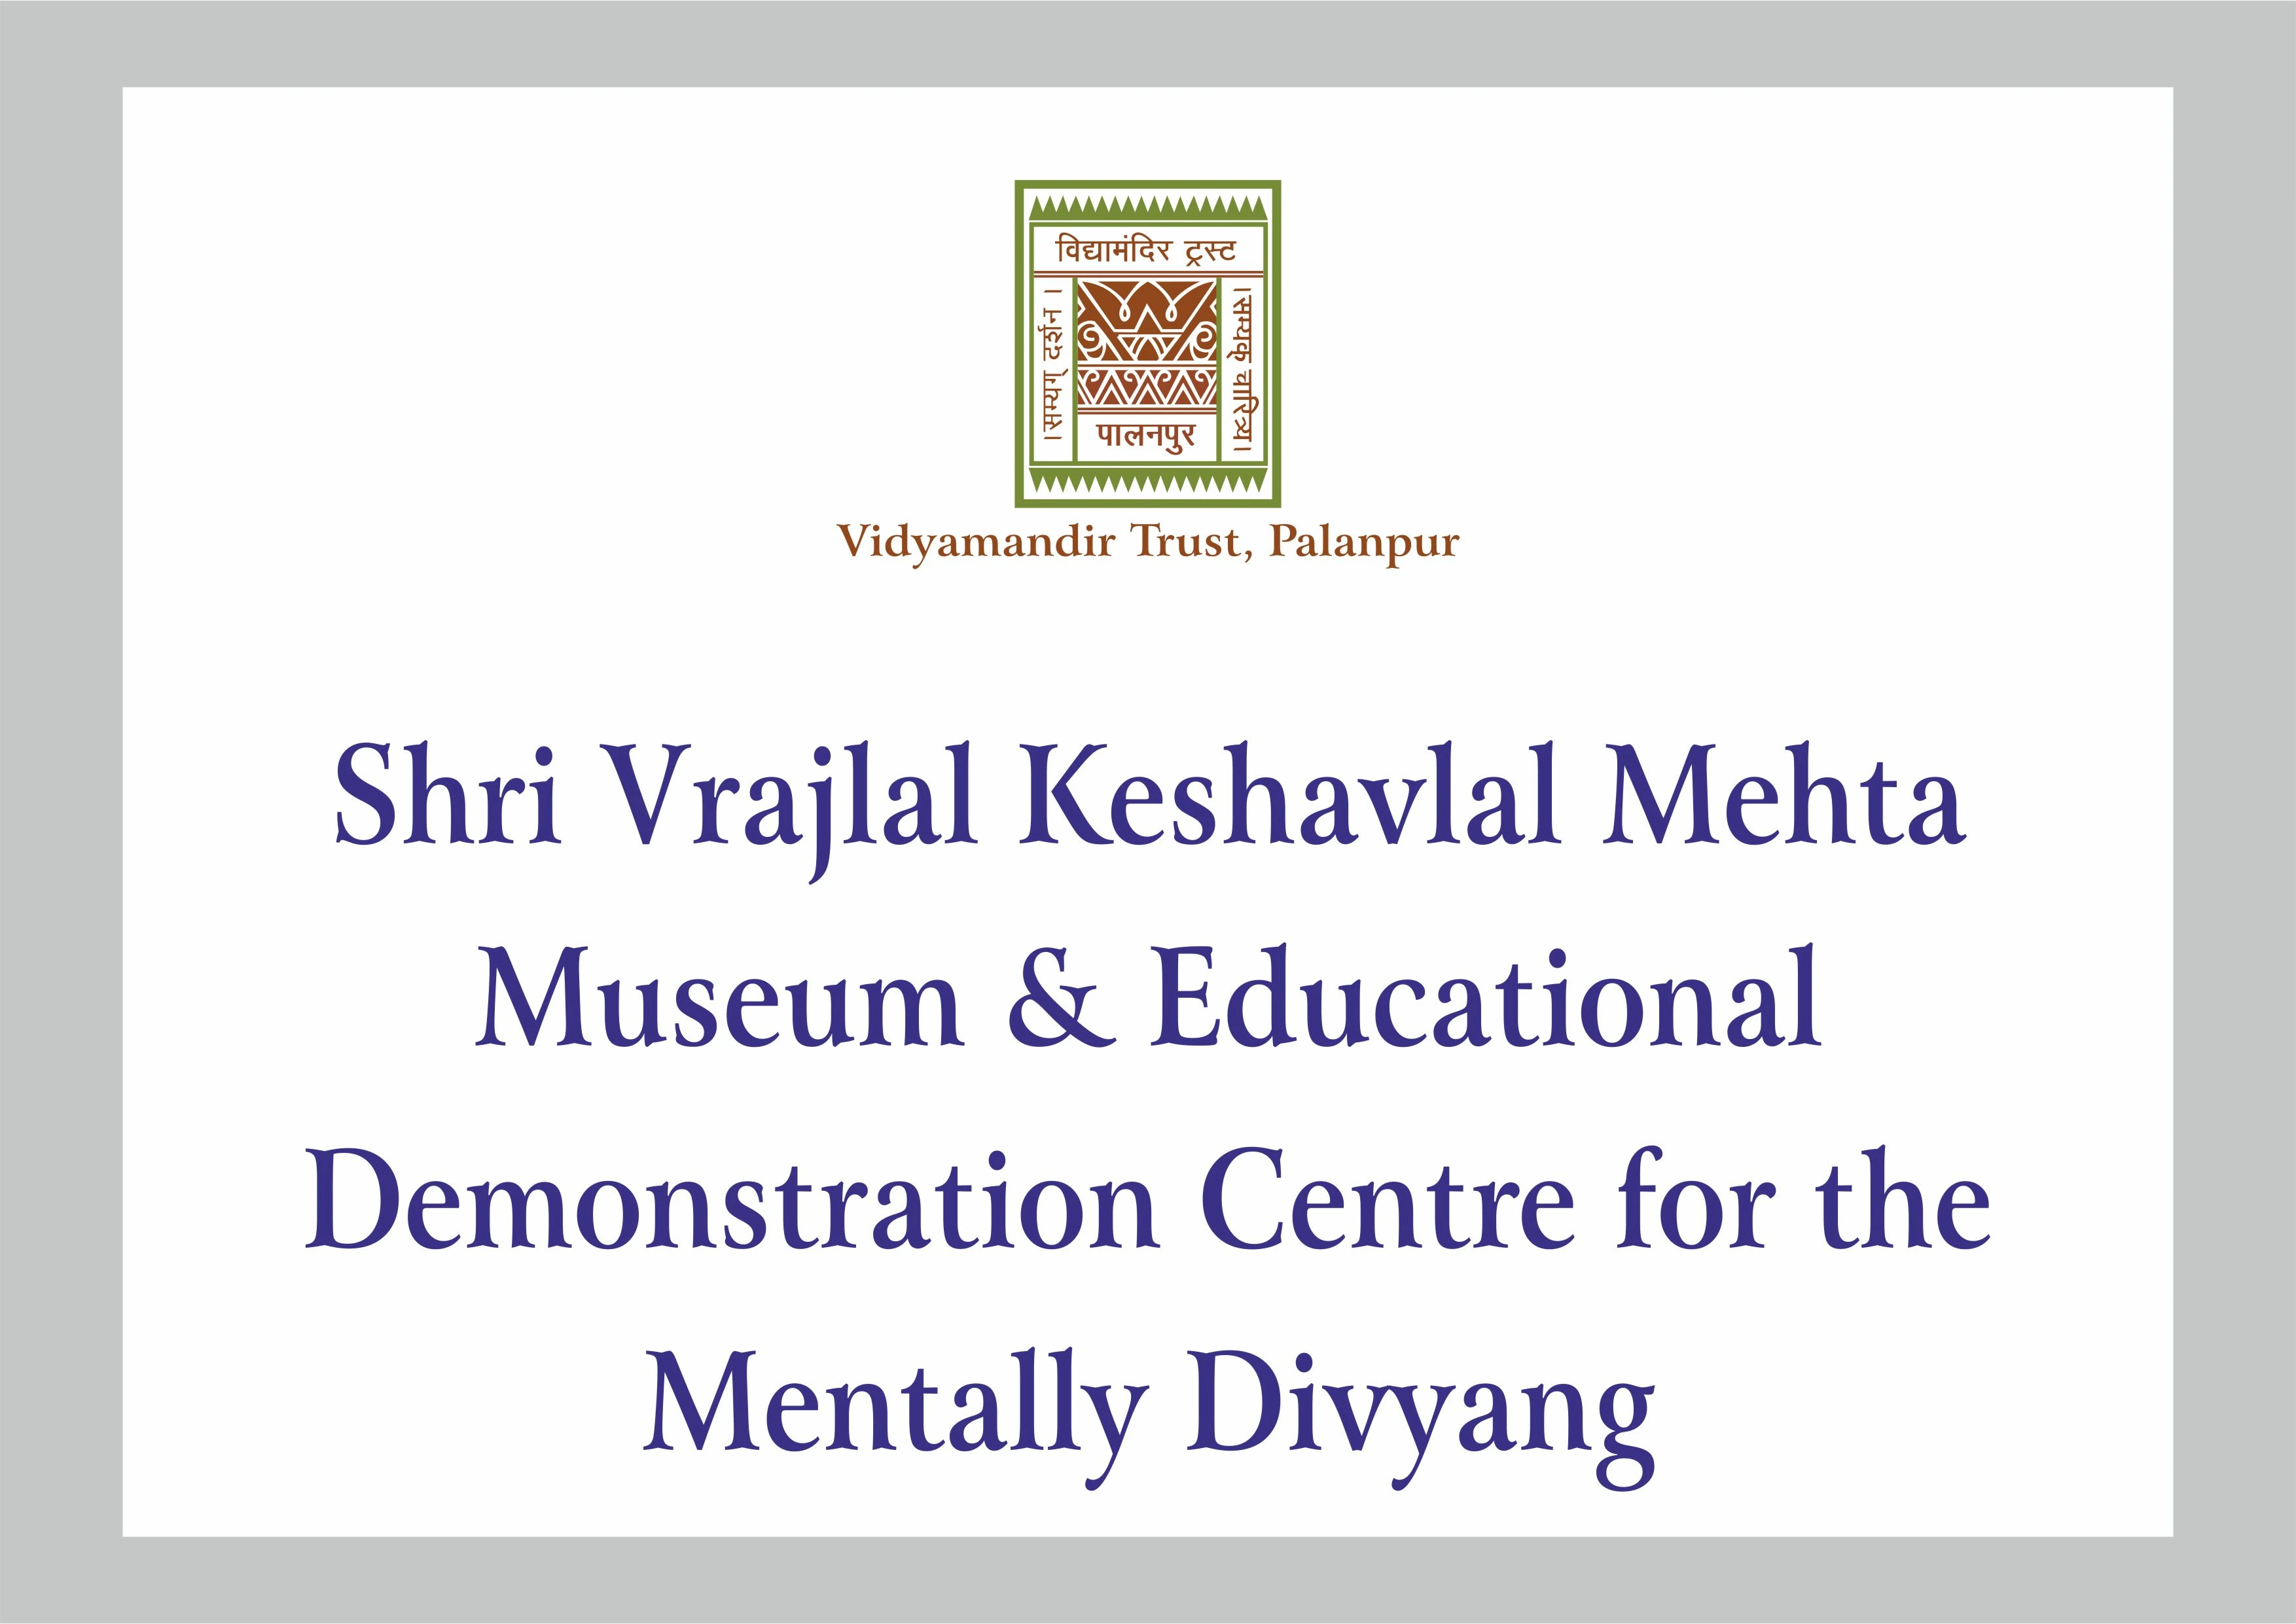 Shri Vrajlal Keshavlal Mehta Museum & Educational Demonstration Centre for the Mentally Divyang - Building Photo